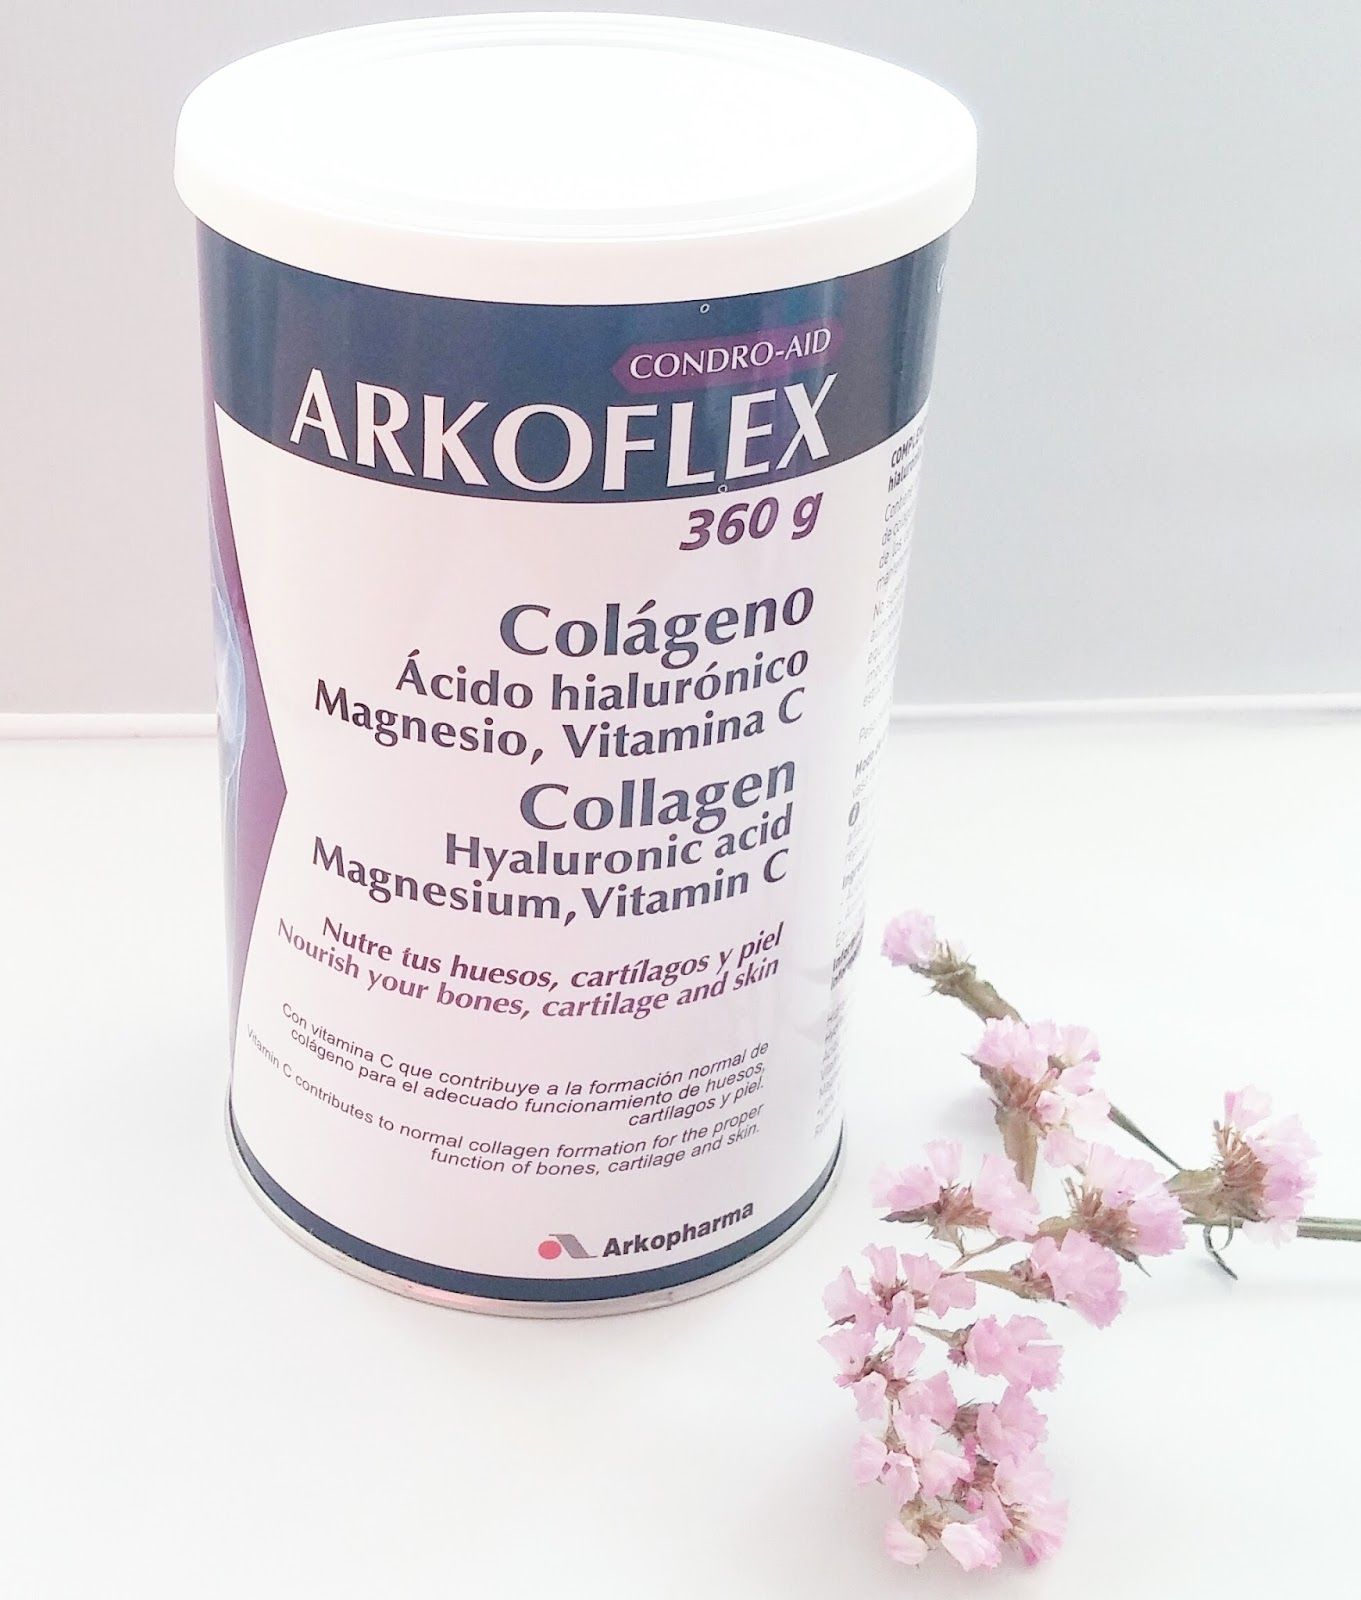 Arko Flex Colágeno de Arkopahrma, colágeno hidrolizado